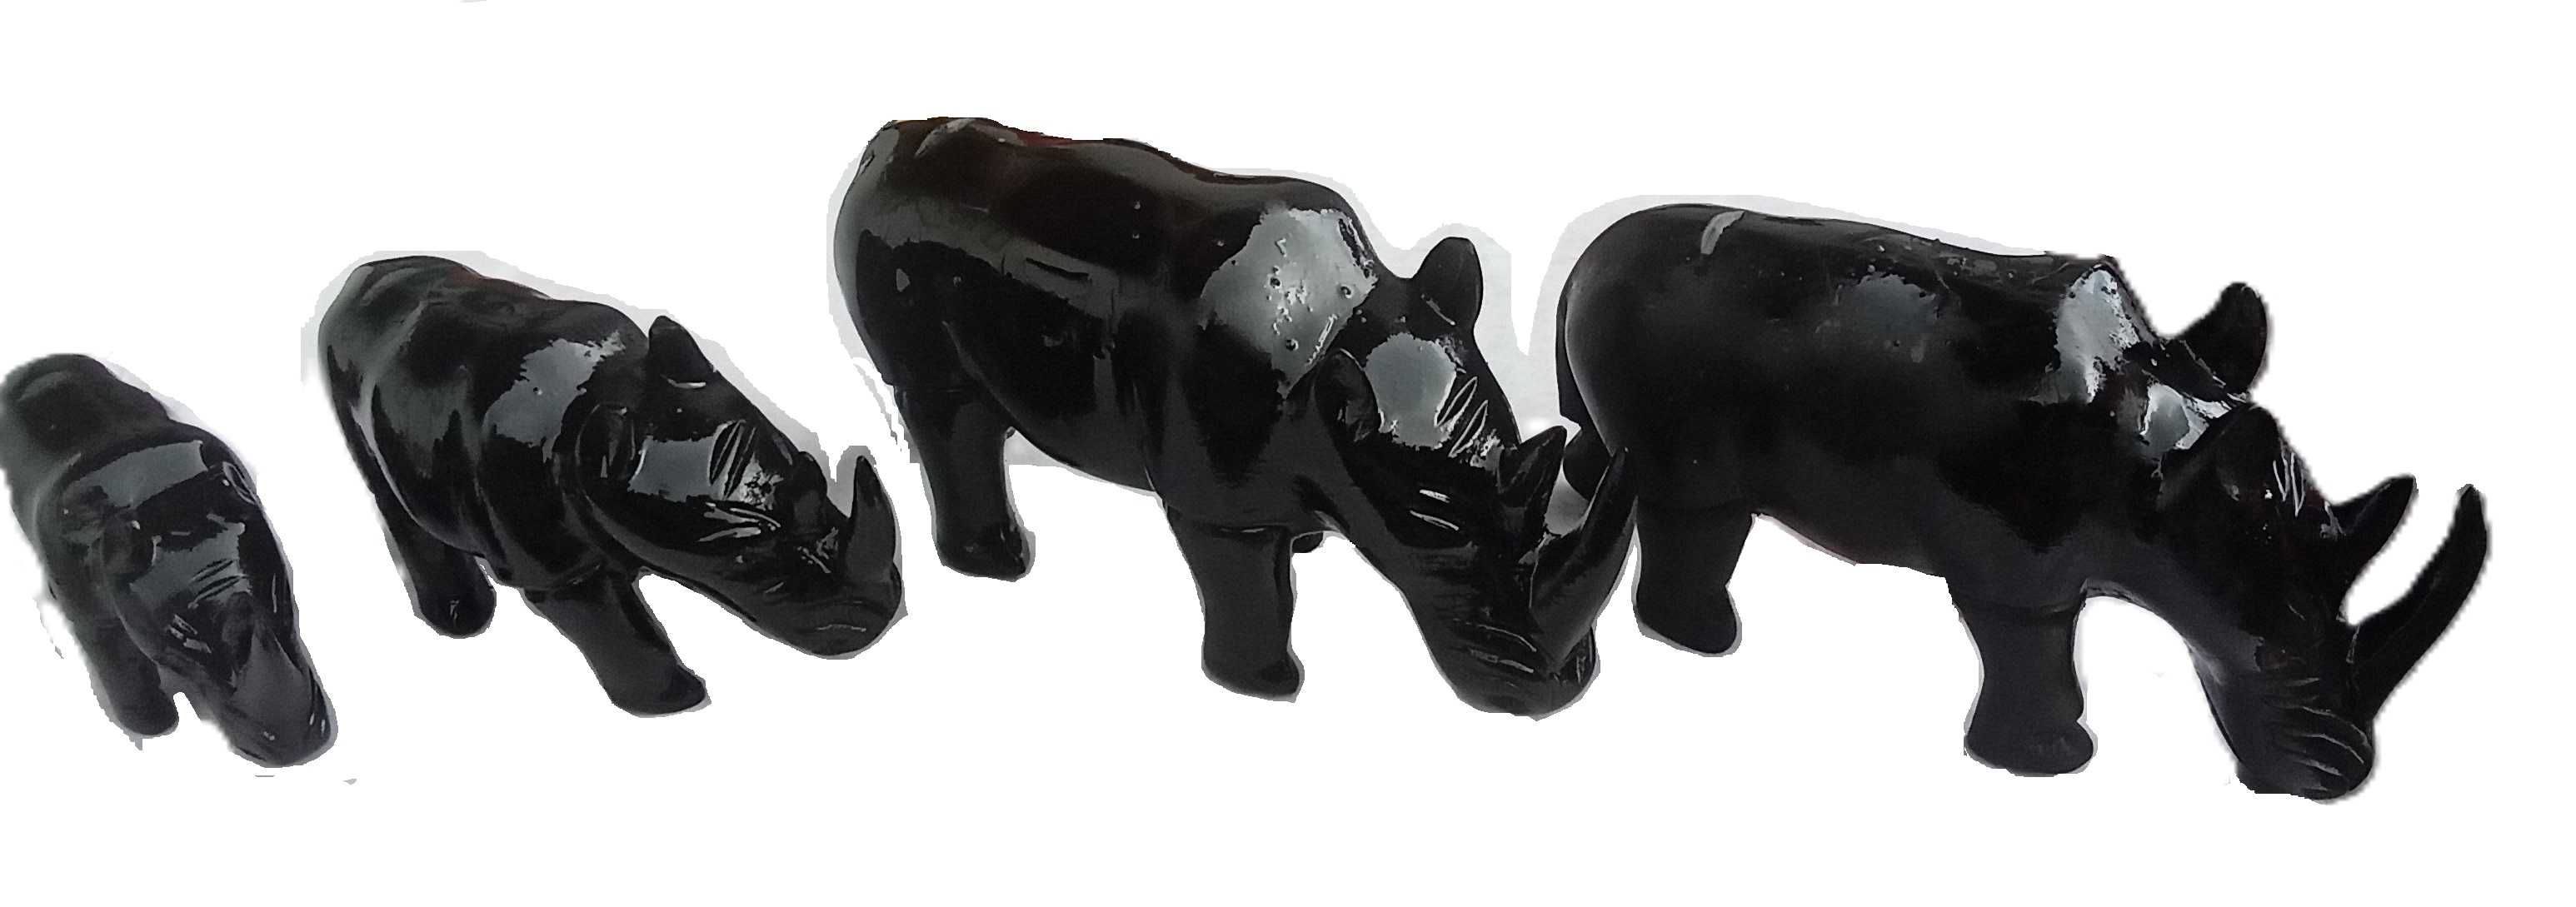 4 Rinocerontes em Pau Preto - Origem Cabinda anos 70's